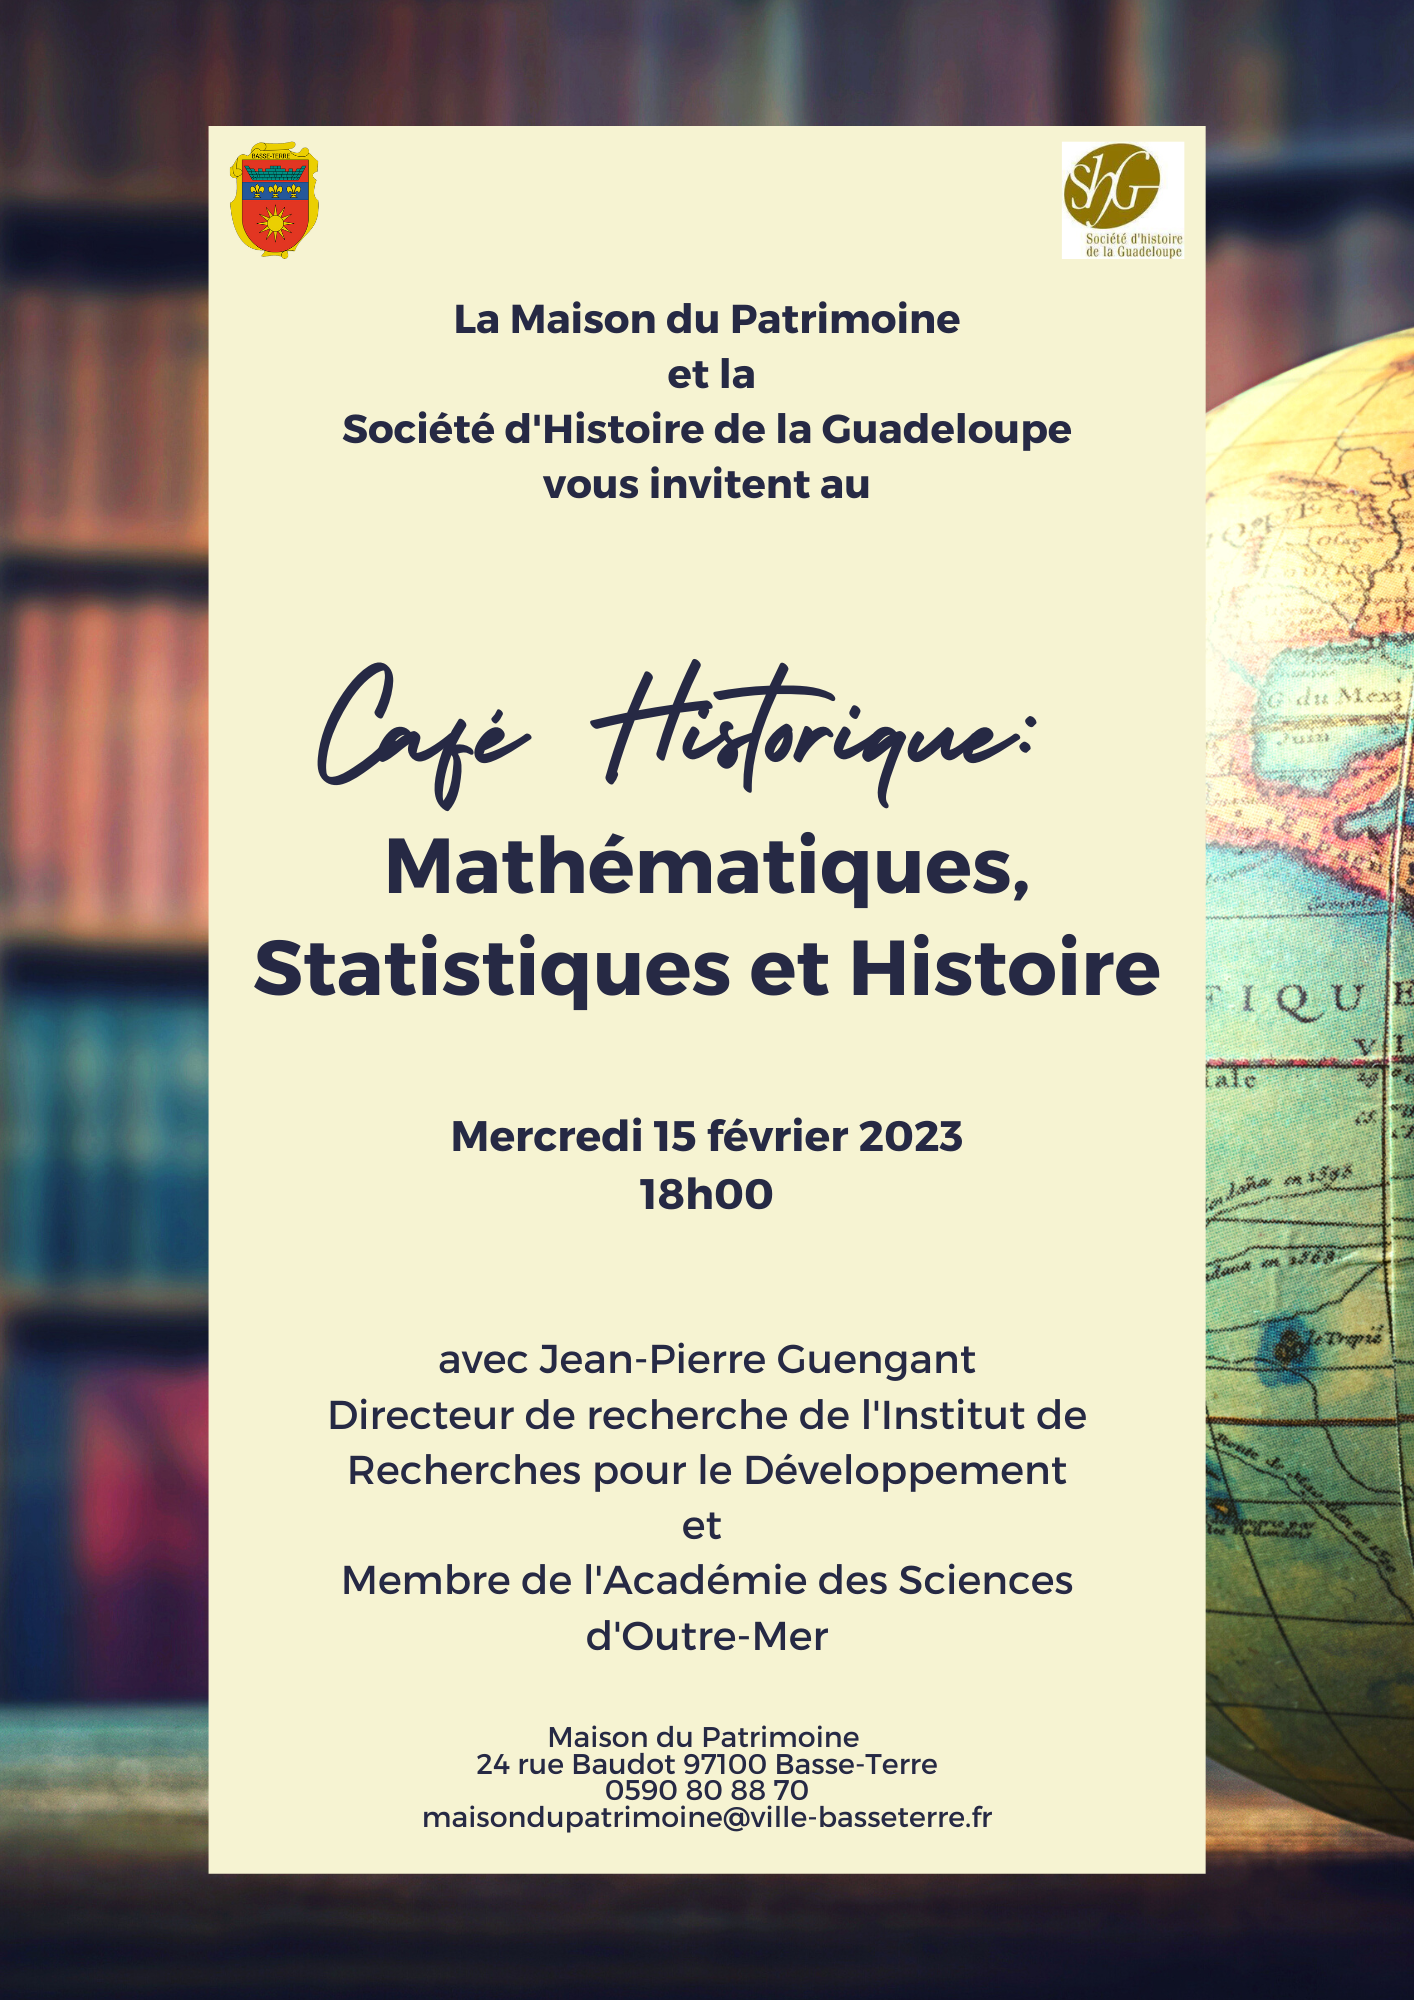 Café Historique: Mathématiques, Statistiques et Histoire